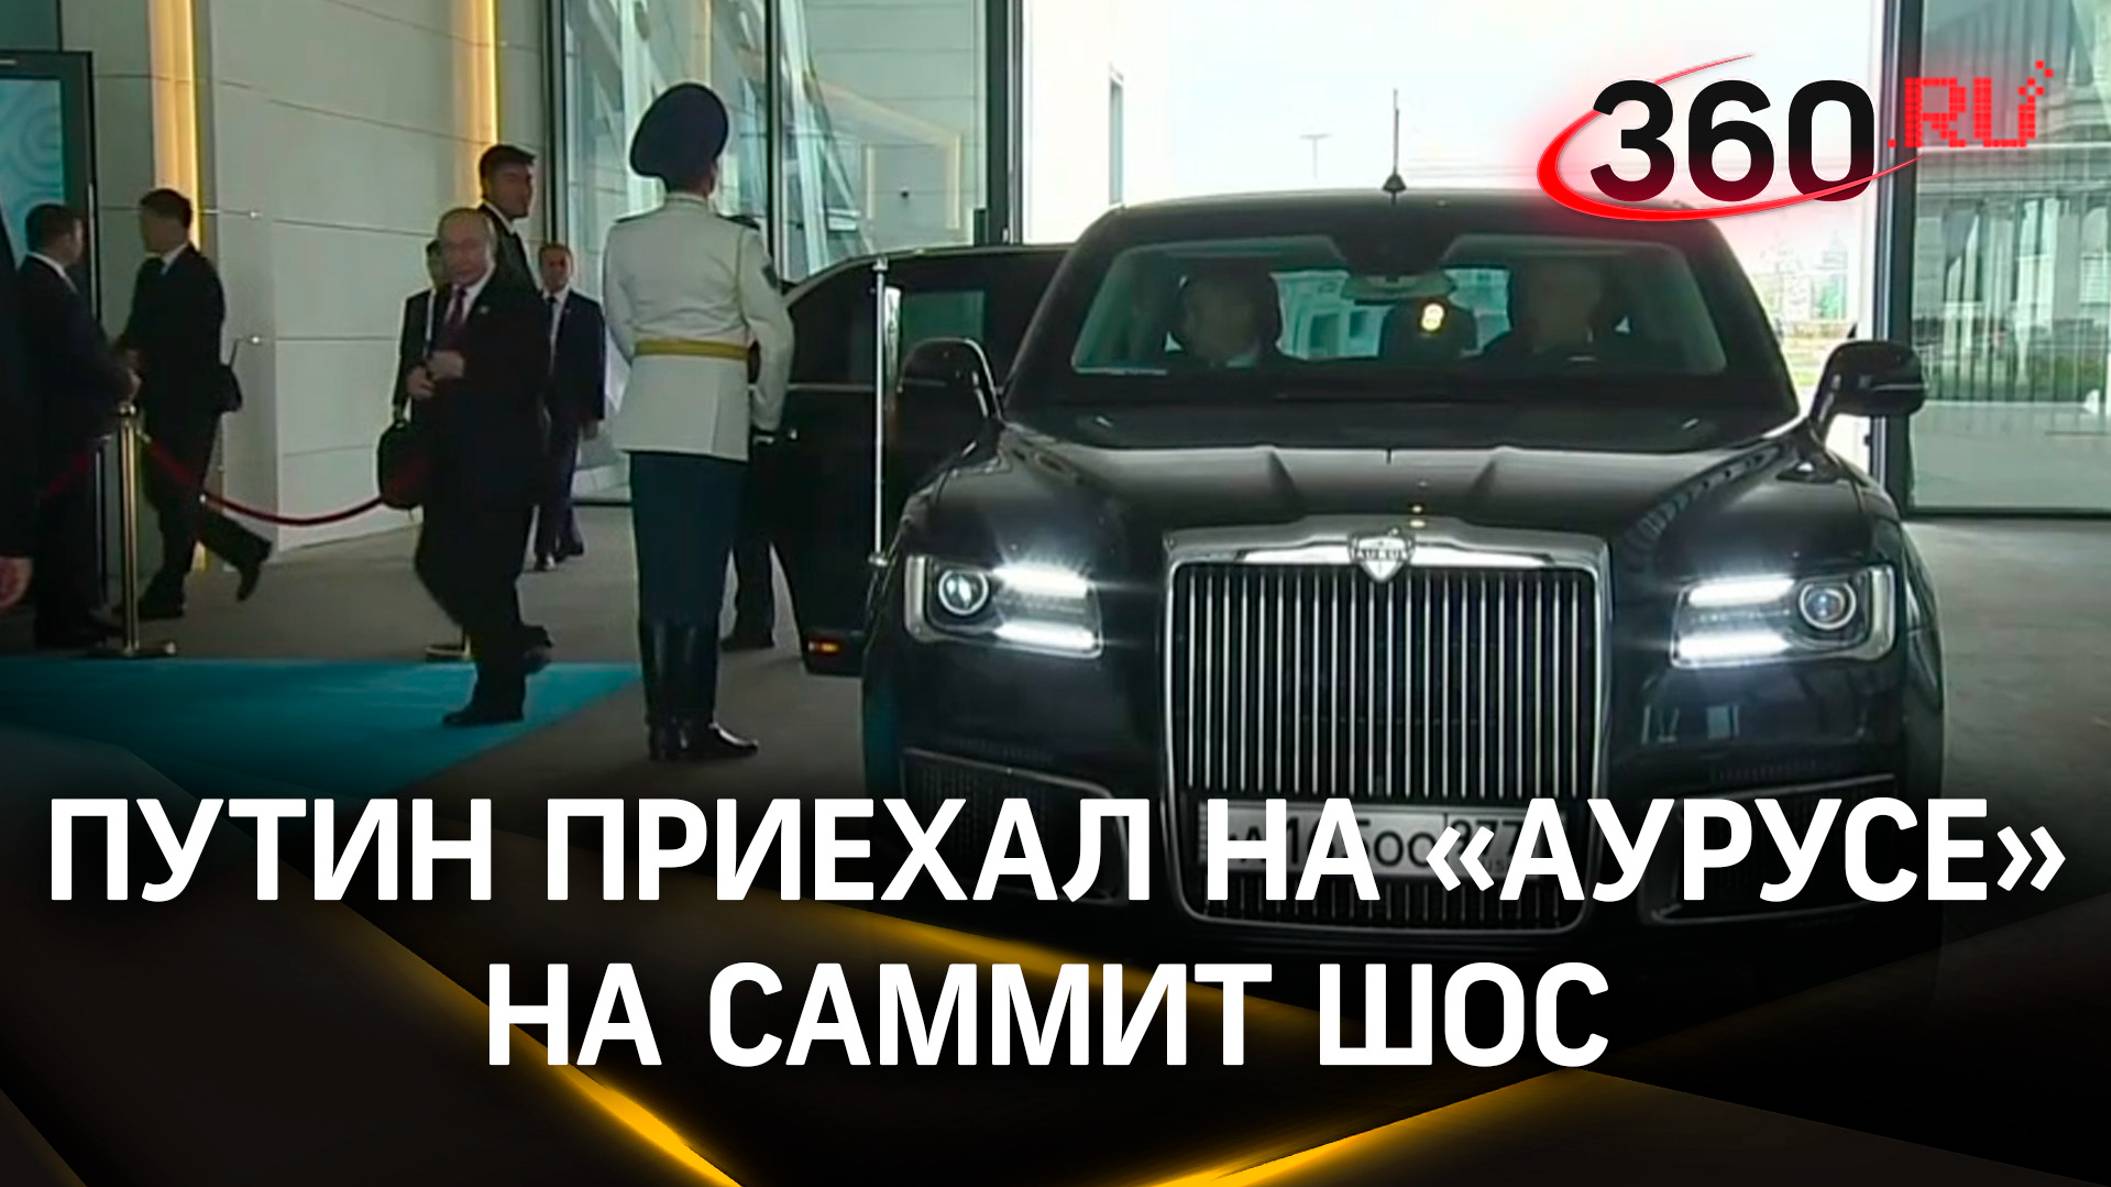 Путин приехал на «Аурусе» с московскими номерами на саммит ШОС в Астане